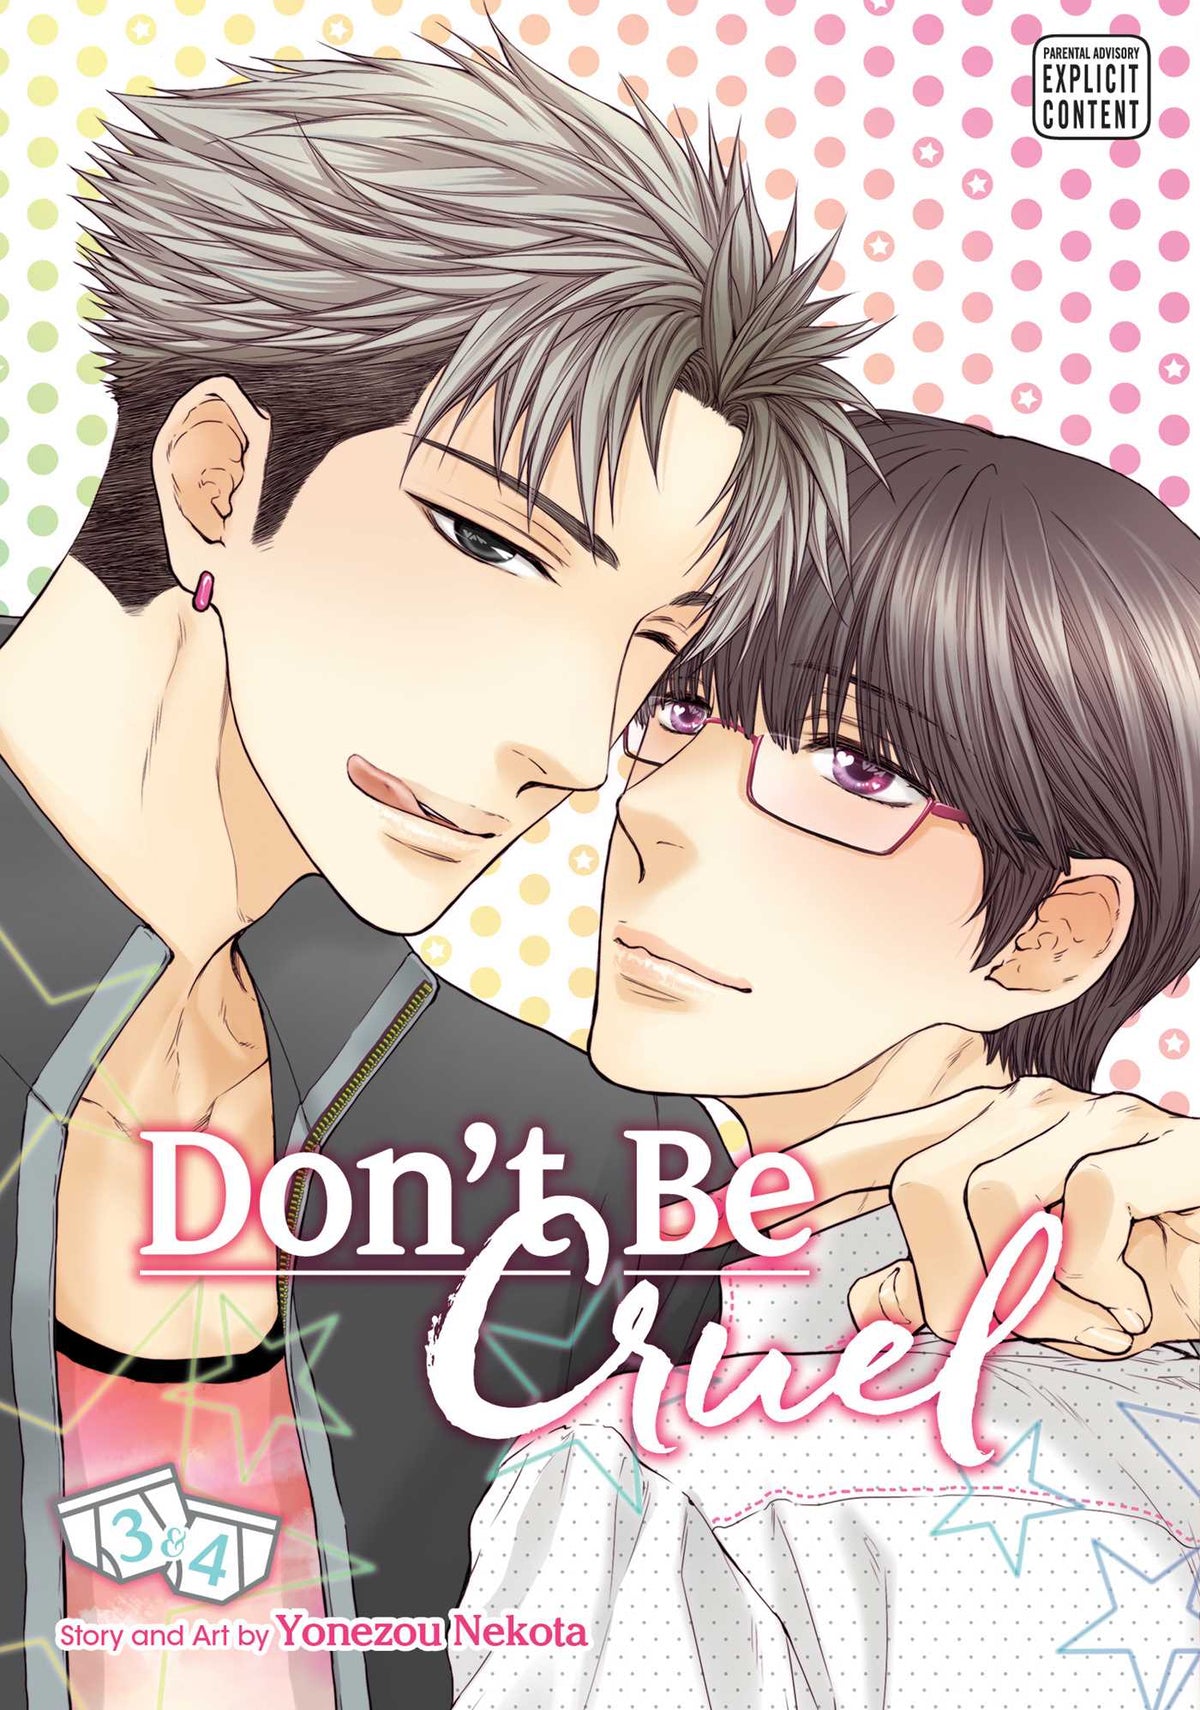 Don't Be Cruel Vol. 3 & 4 - Third Eye